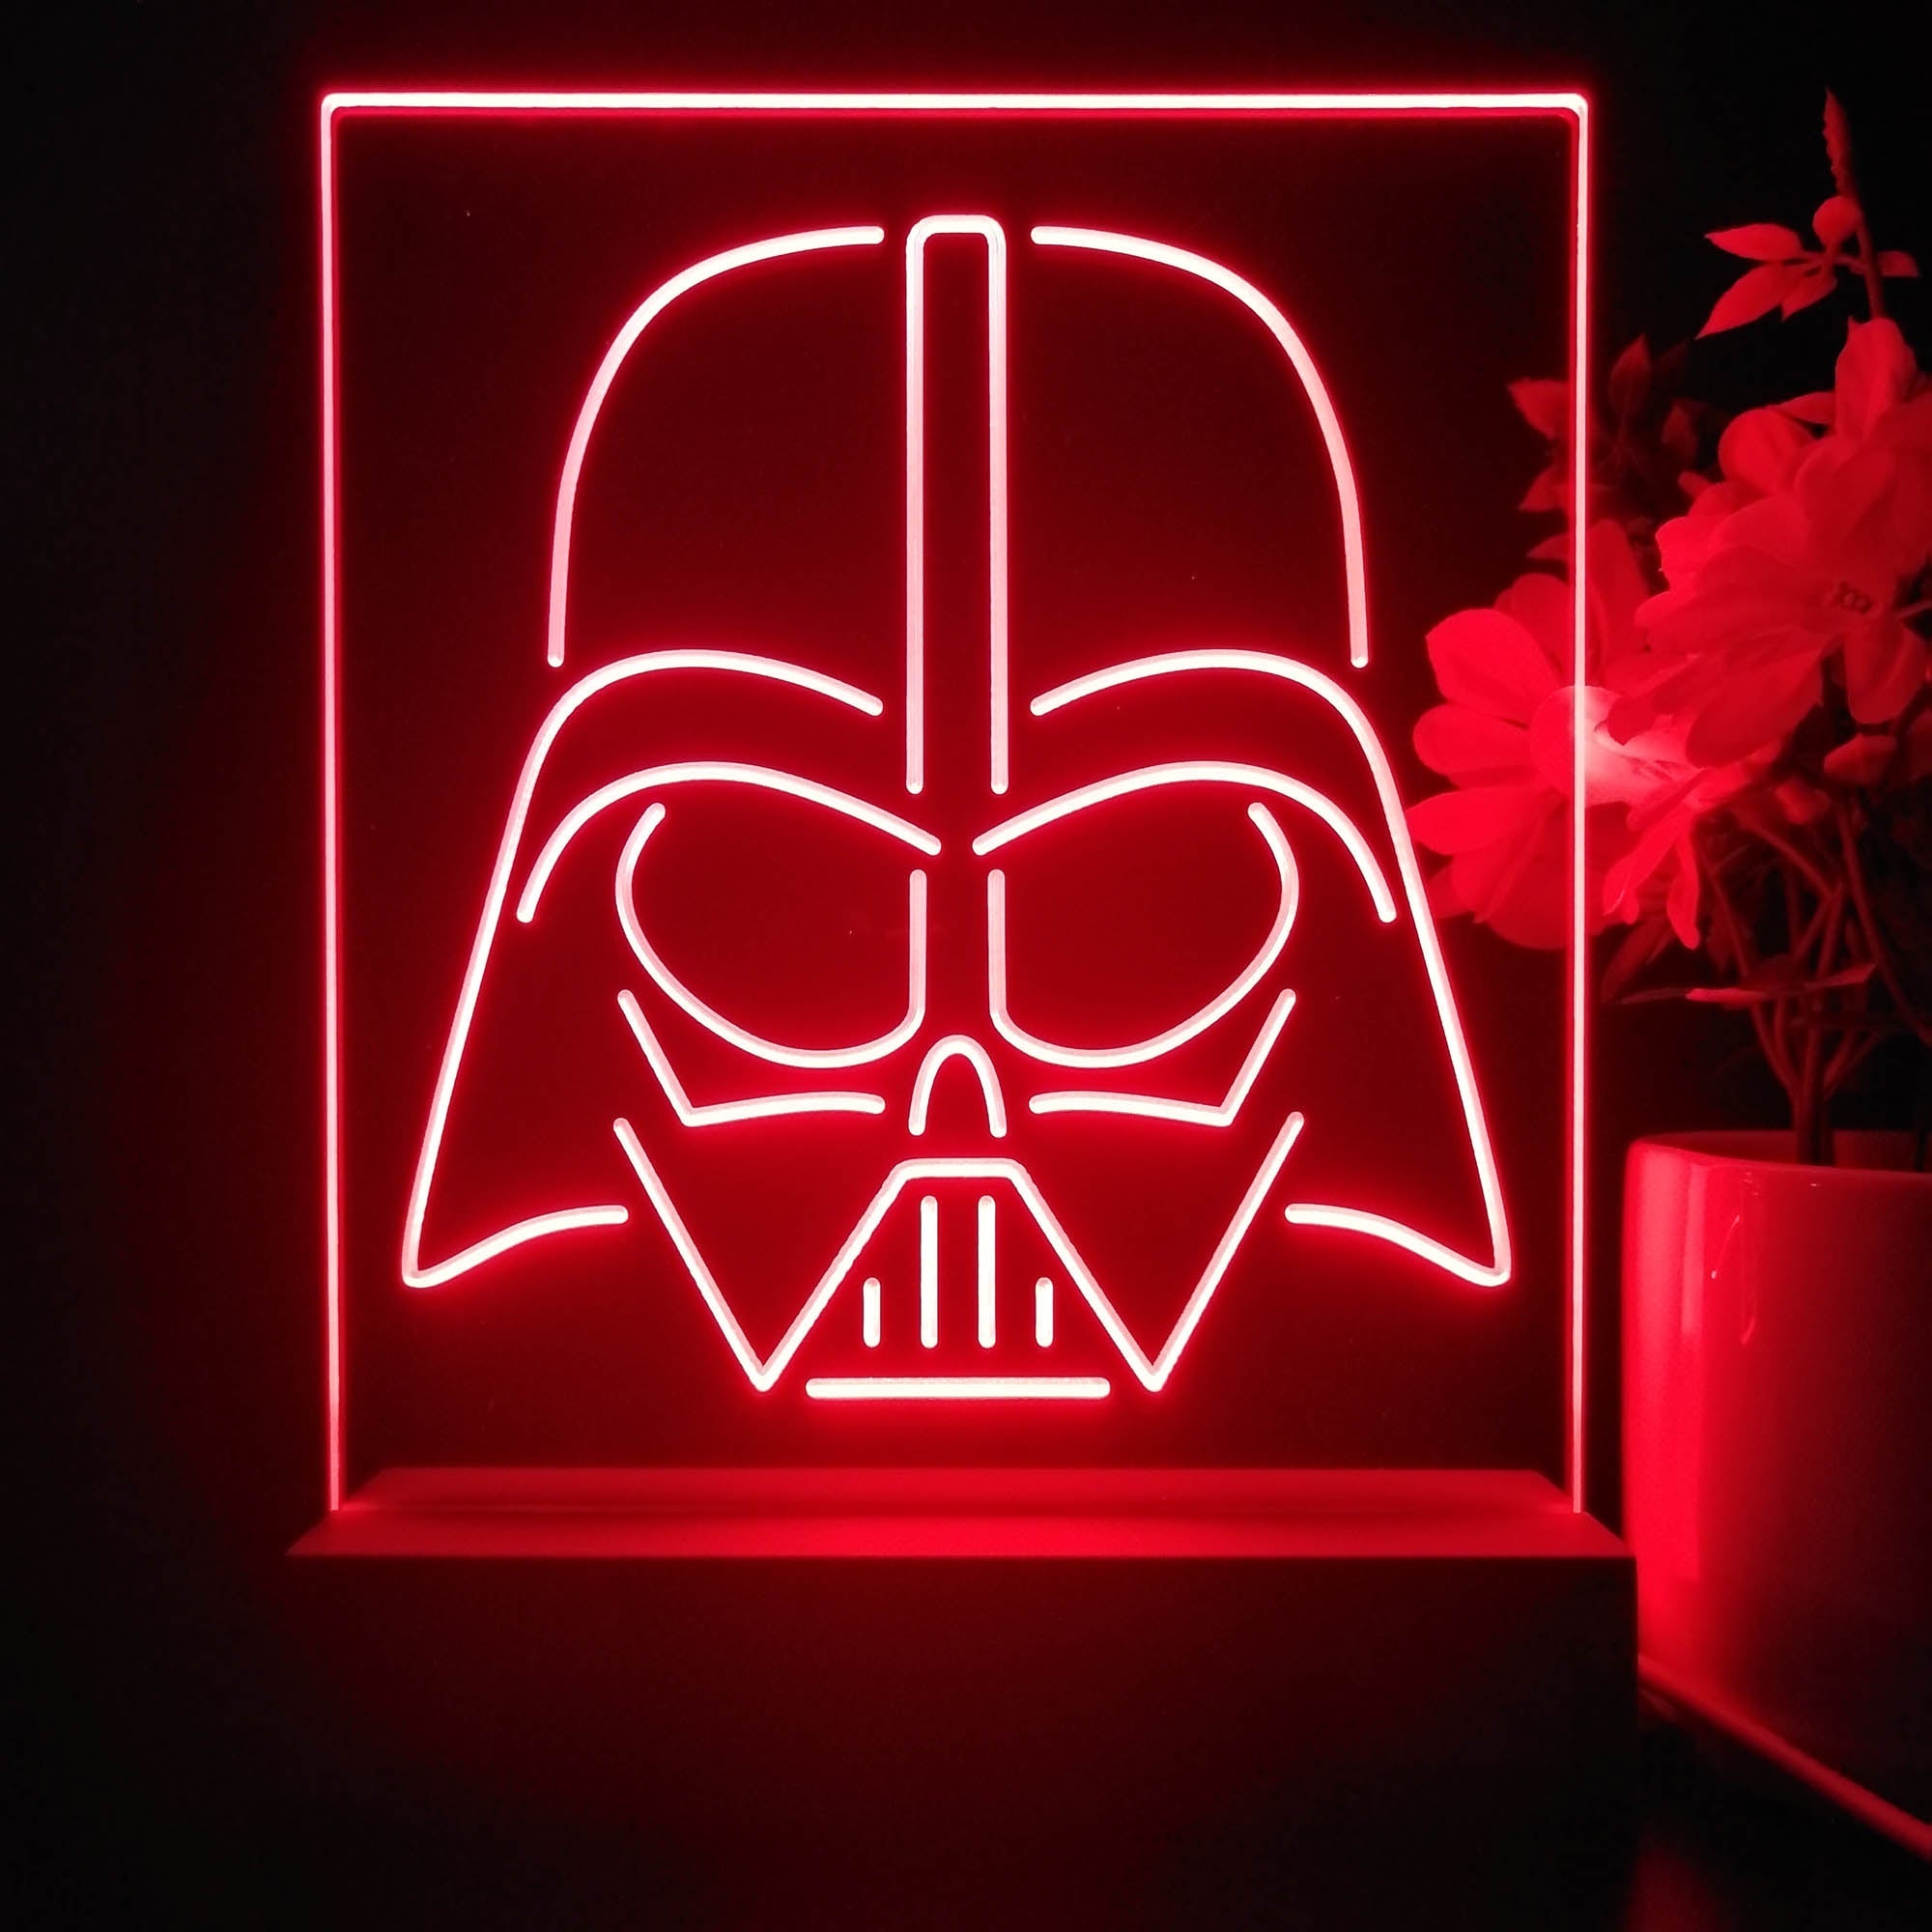 Star Wars Darth Vader 3D Illusion Night Light Desk Lamp